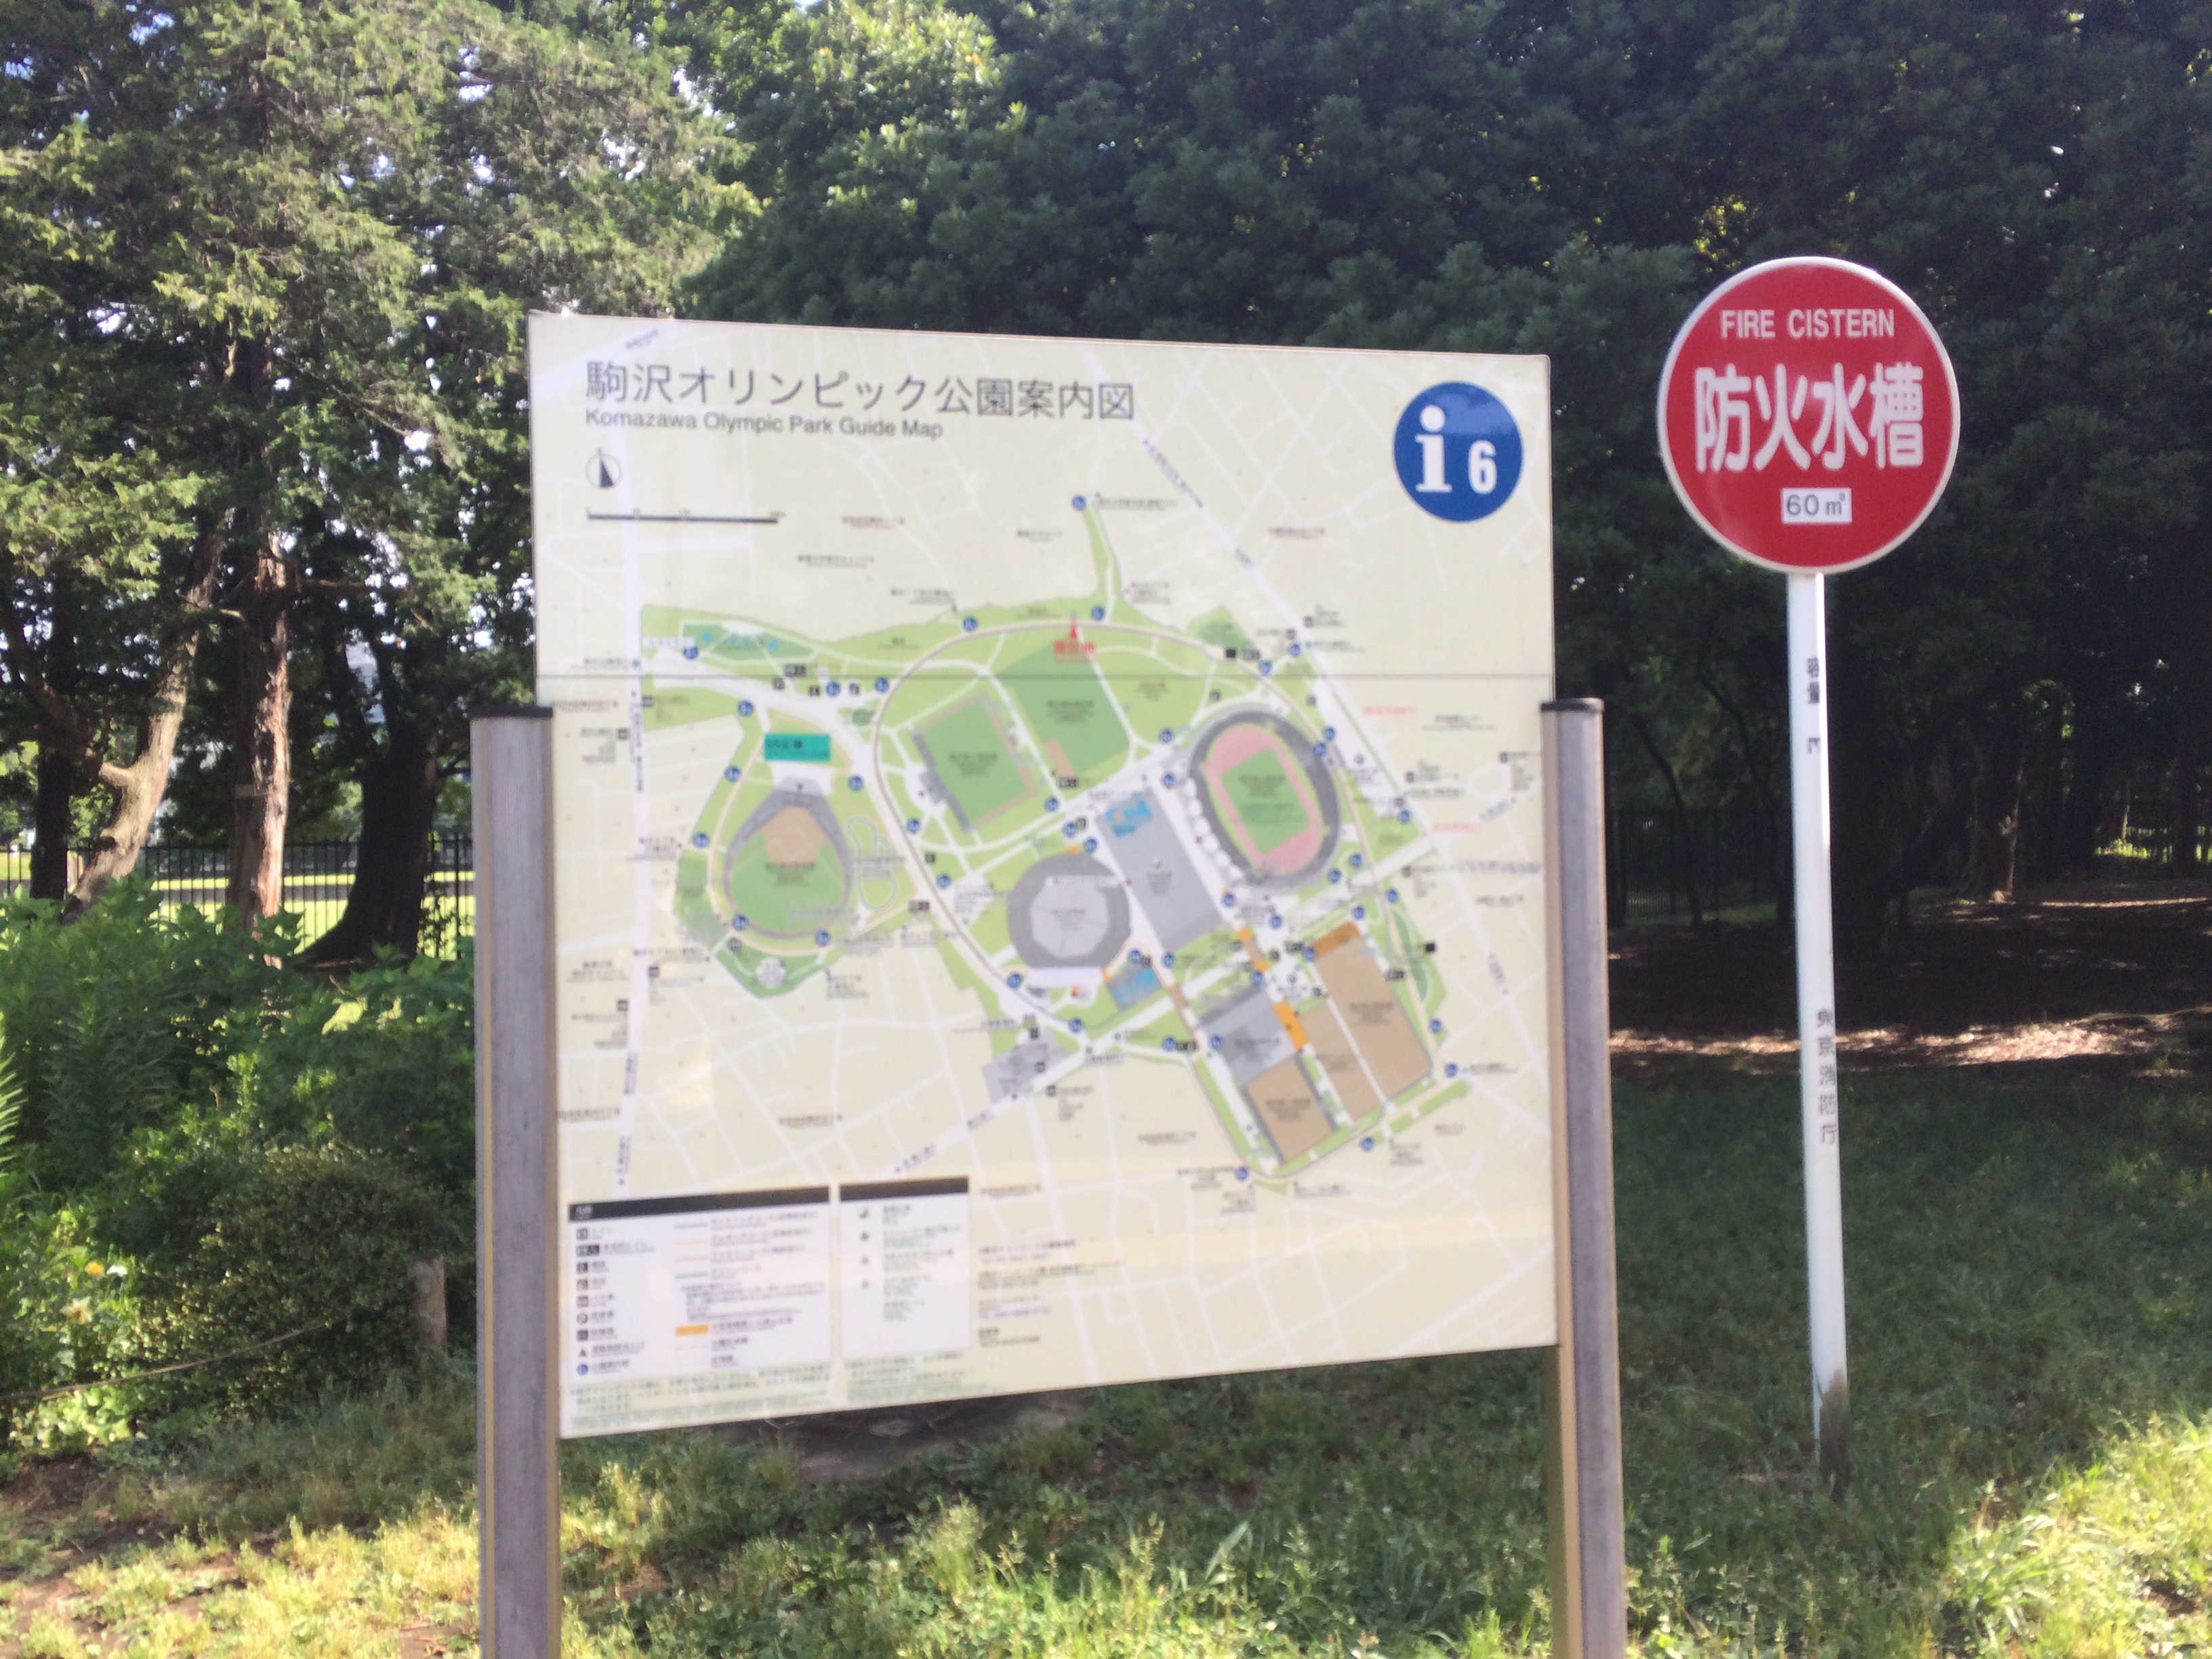 駒沢オリンピック公園案内図